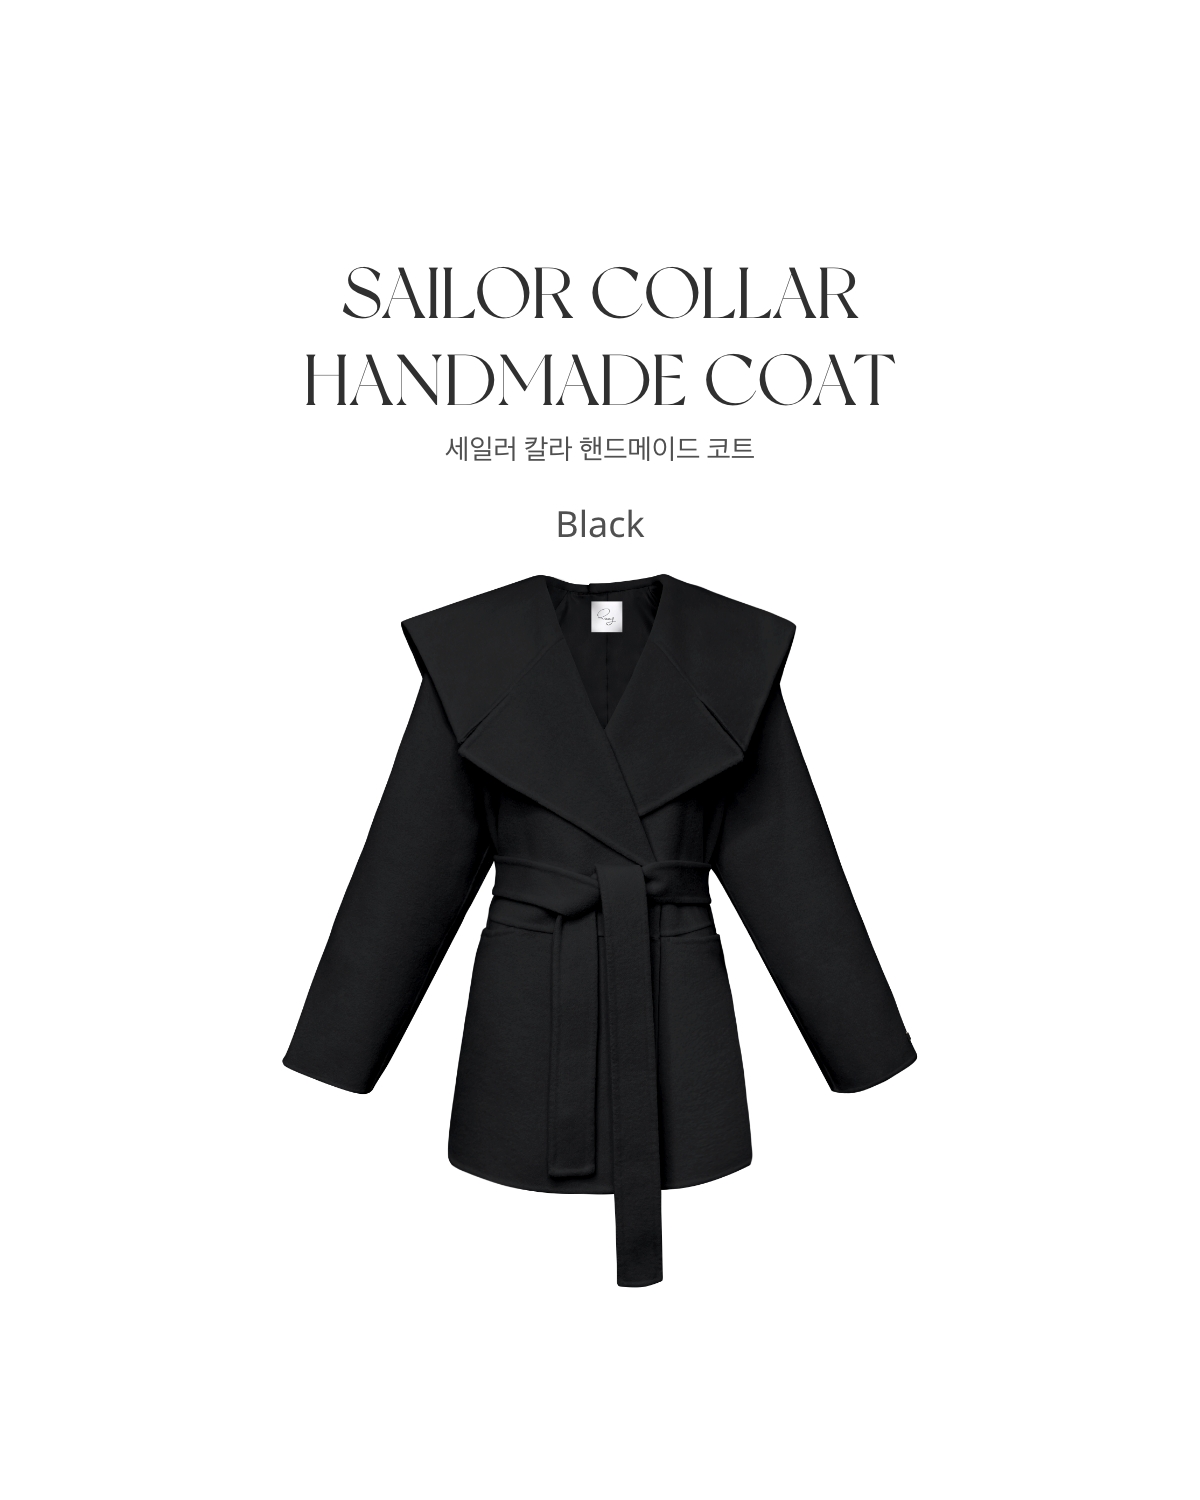 クン セーラーカラーhandmadeコート カラー:ブラック、アイボリー、キャメル